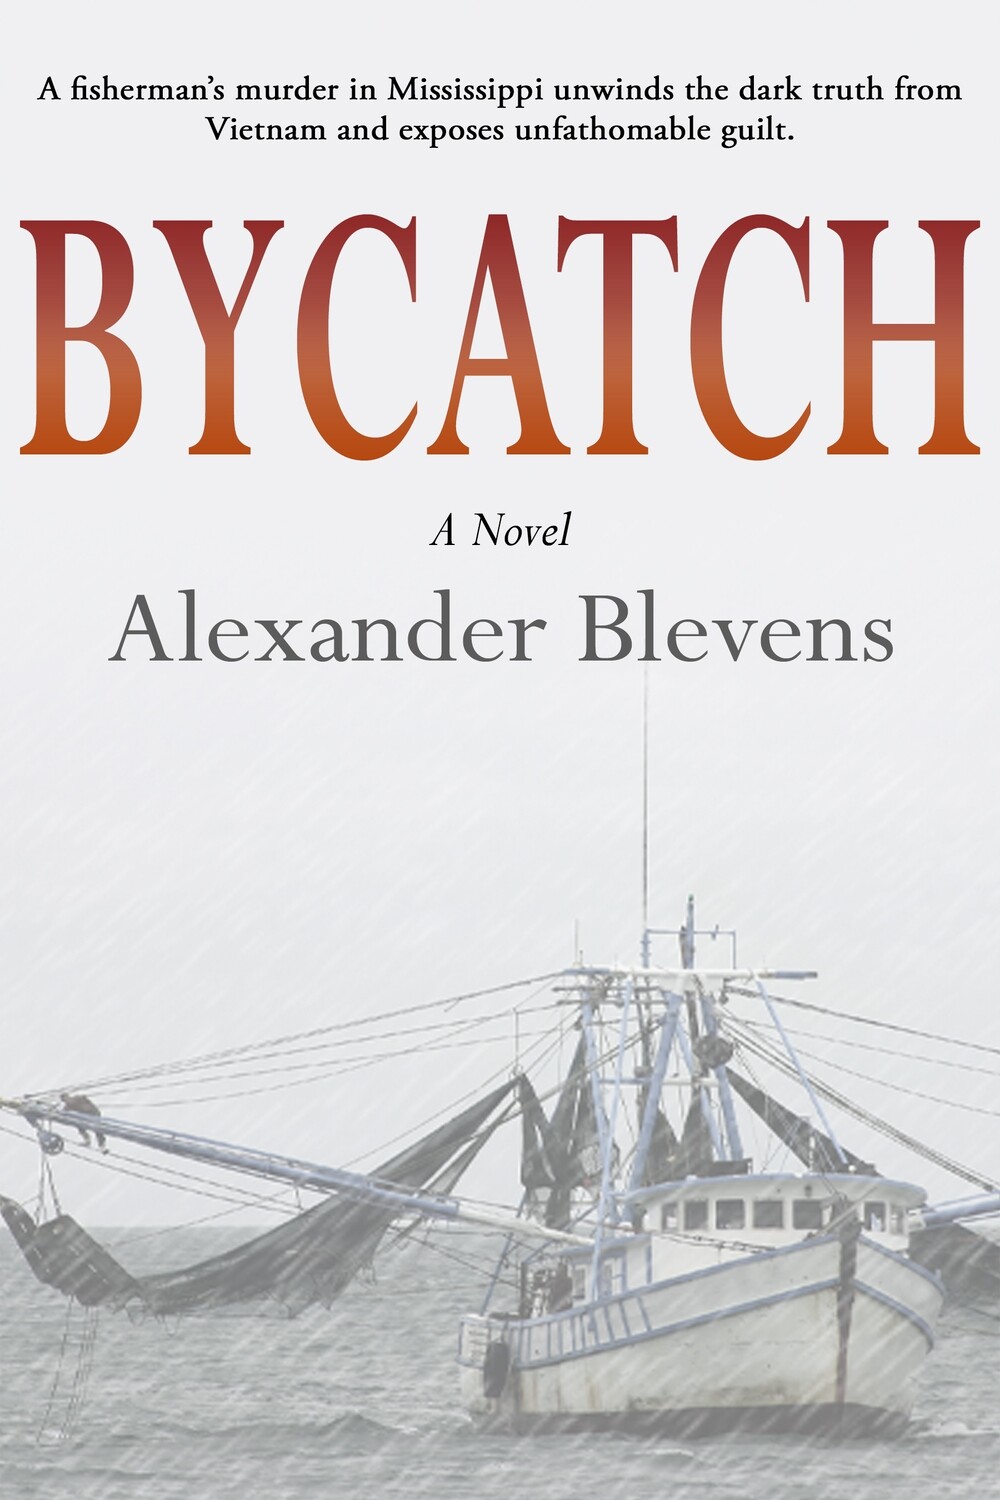 Bycatch - a novel